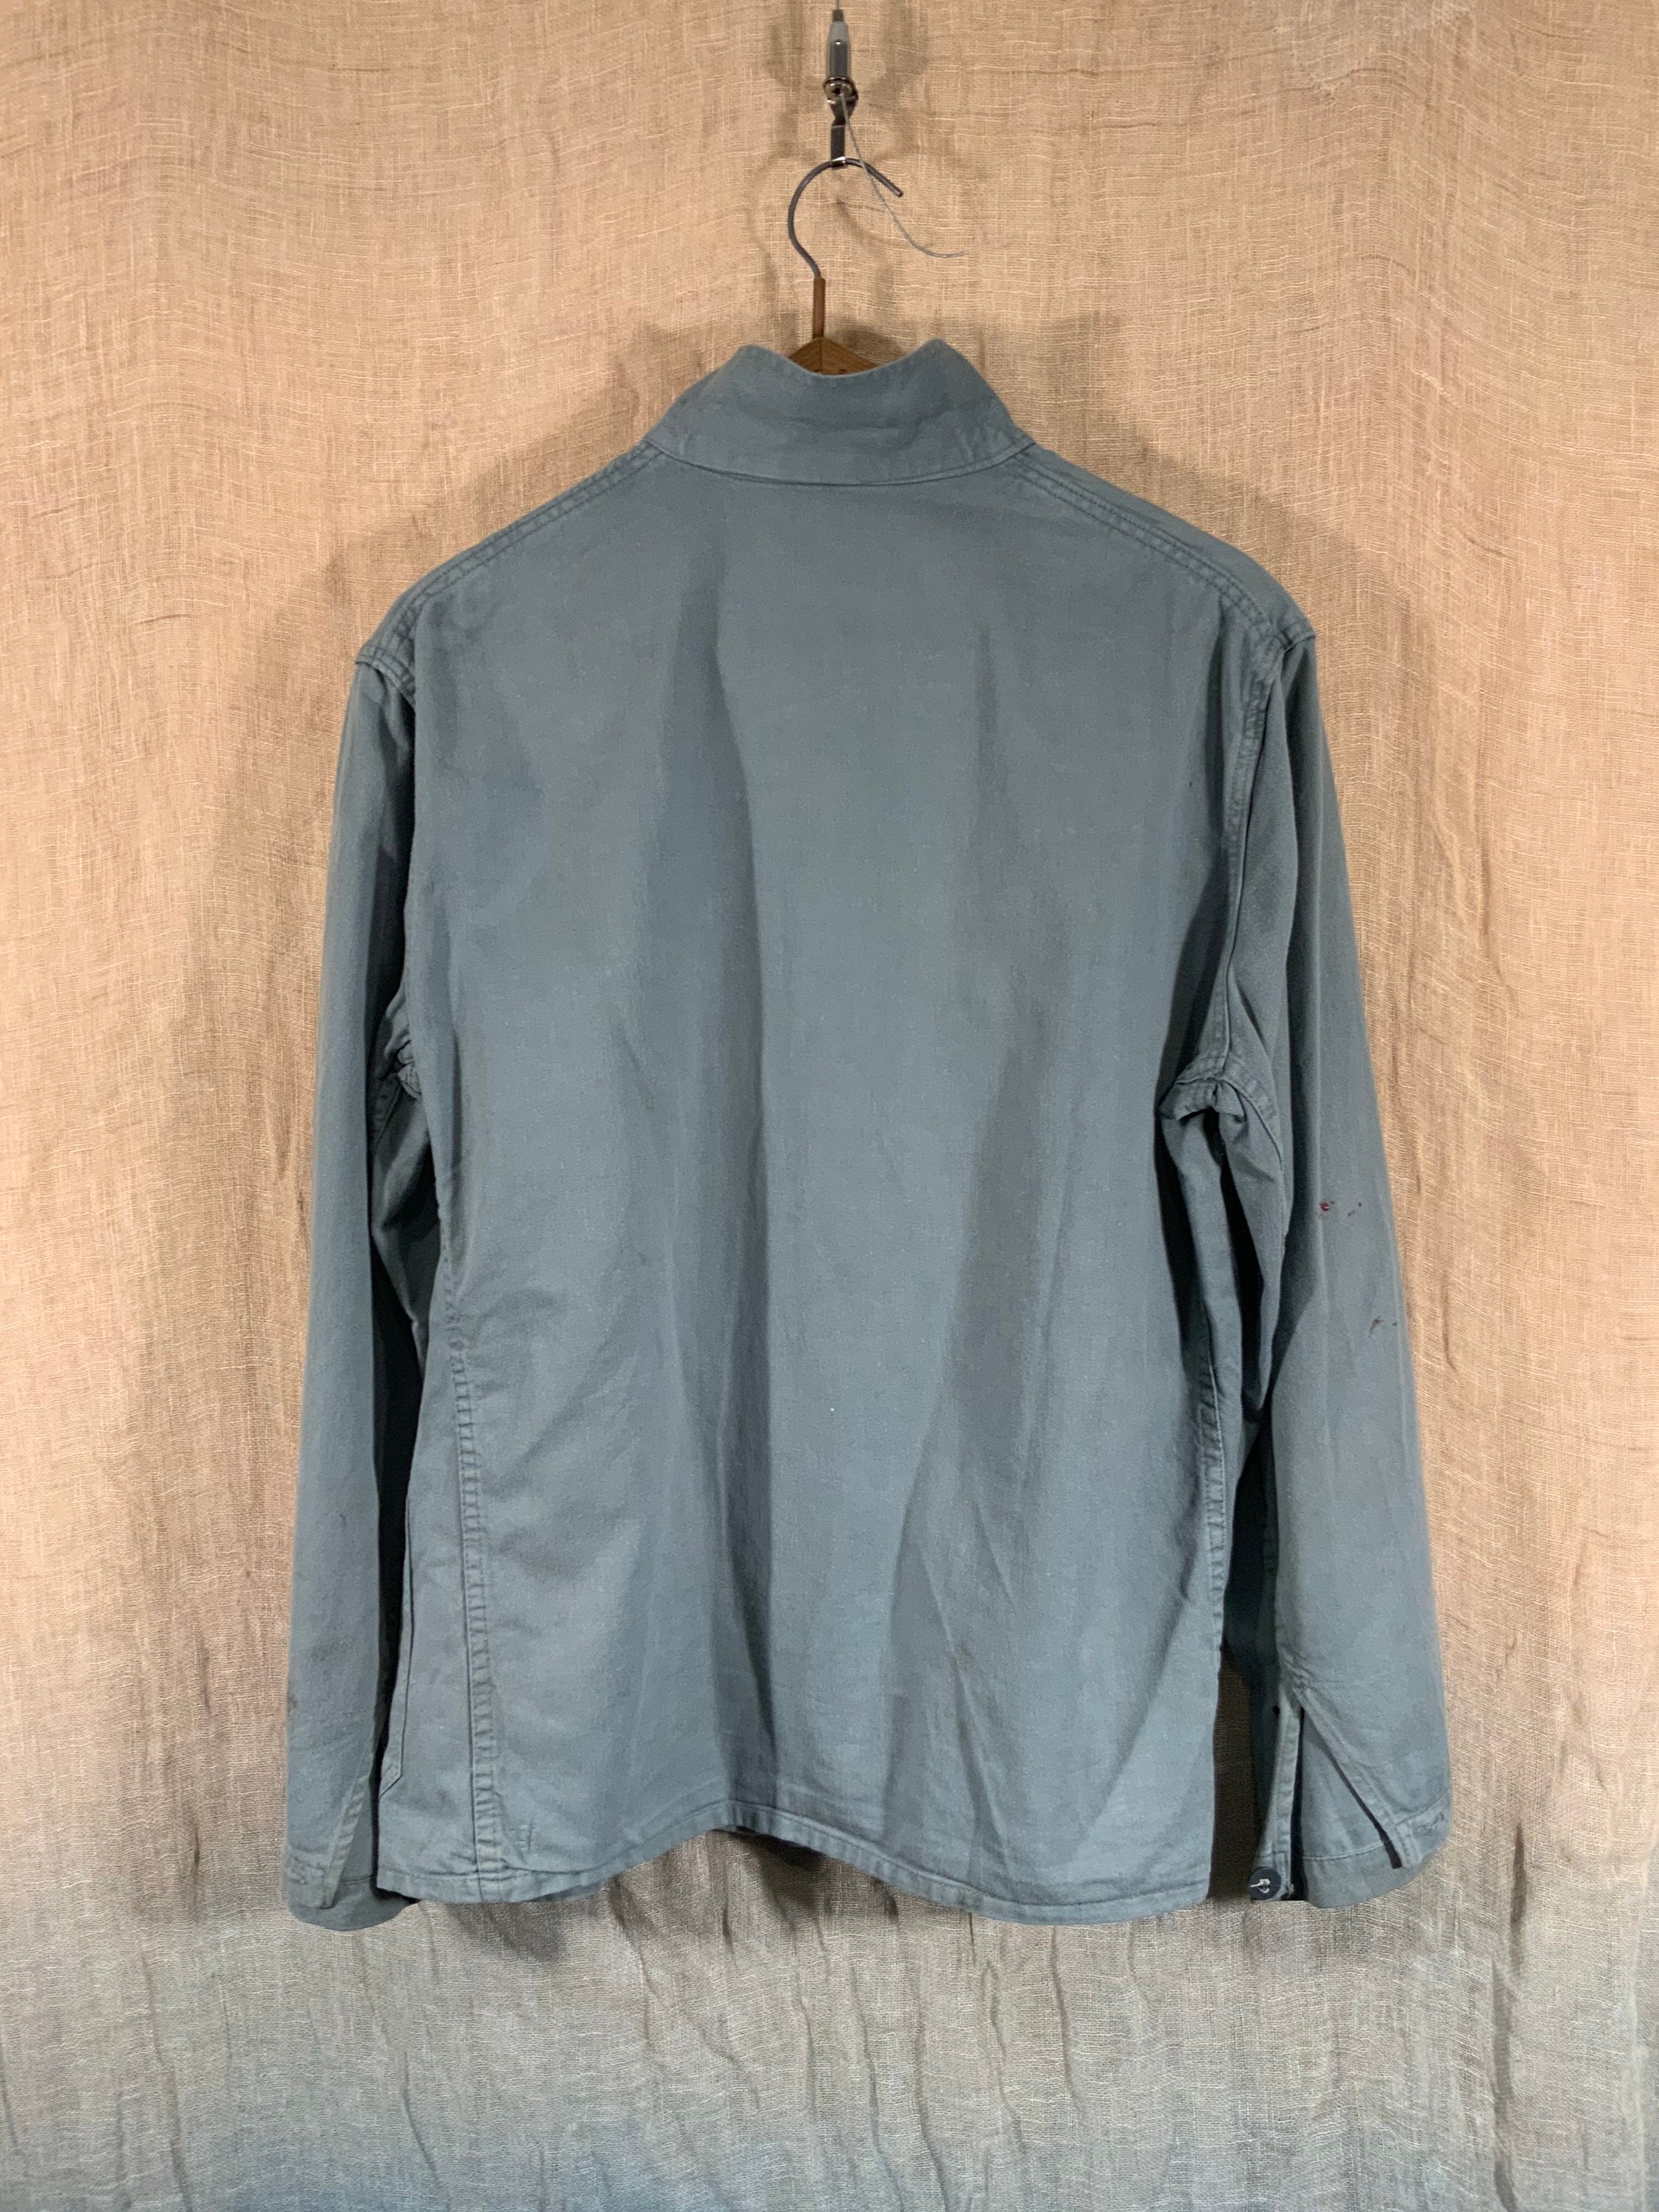 1970s kaki green grey chore shirt jacket in cotton drill | Etsy